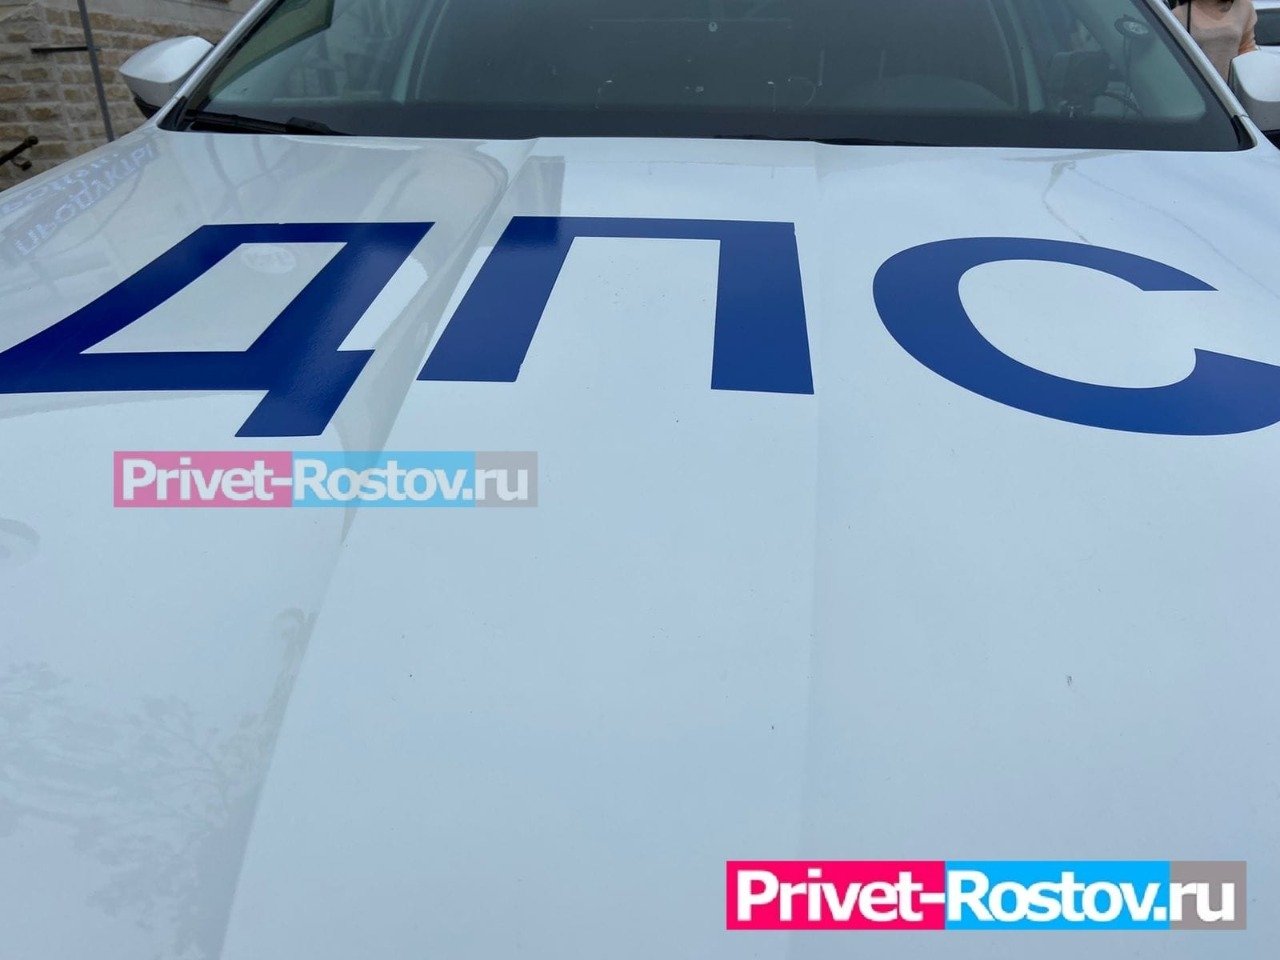 Две машины ДПС попали в аварию во время погони в центре в Ростове в ночь 19 на 20 мая